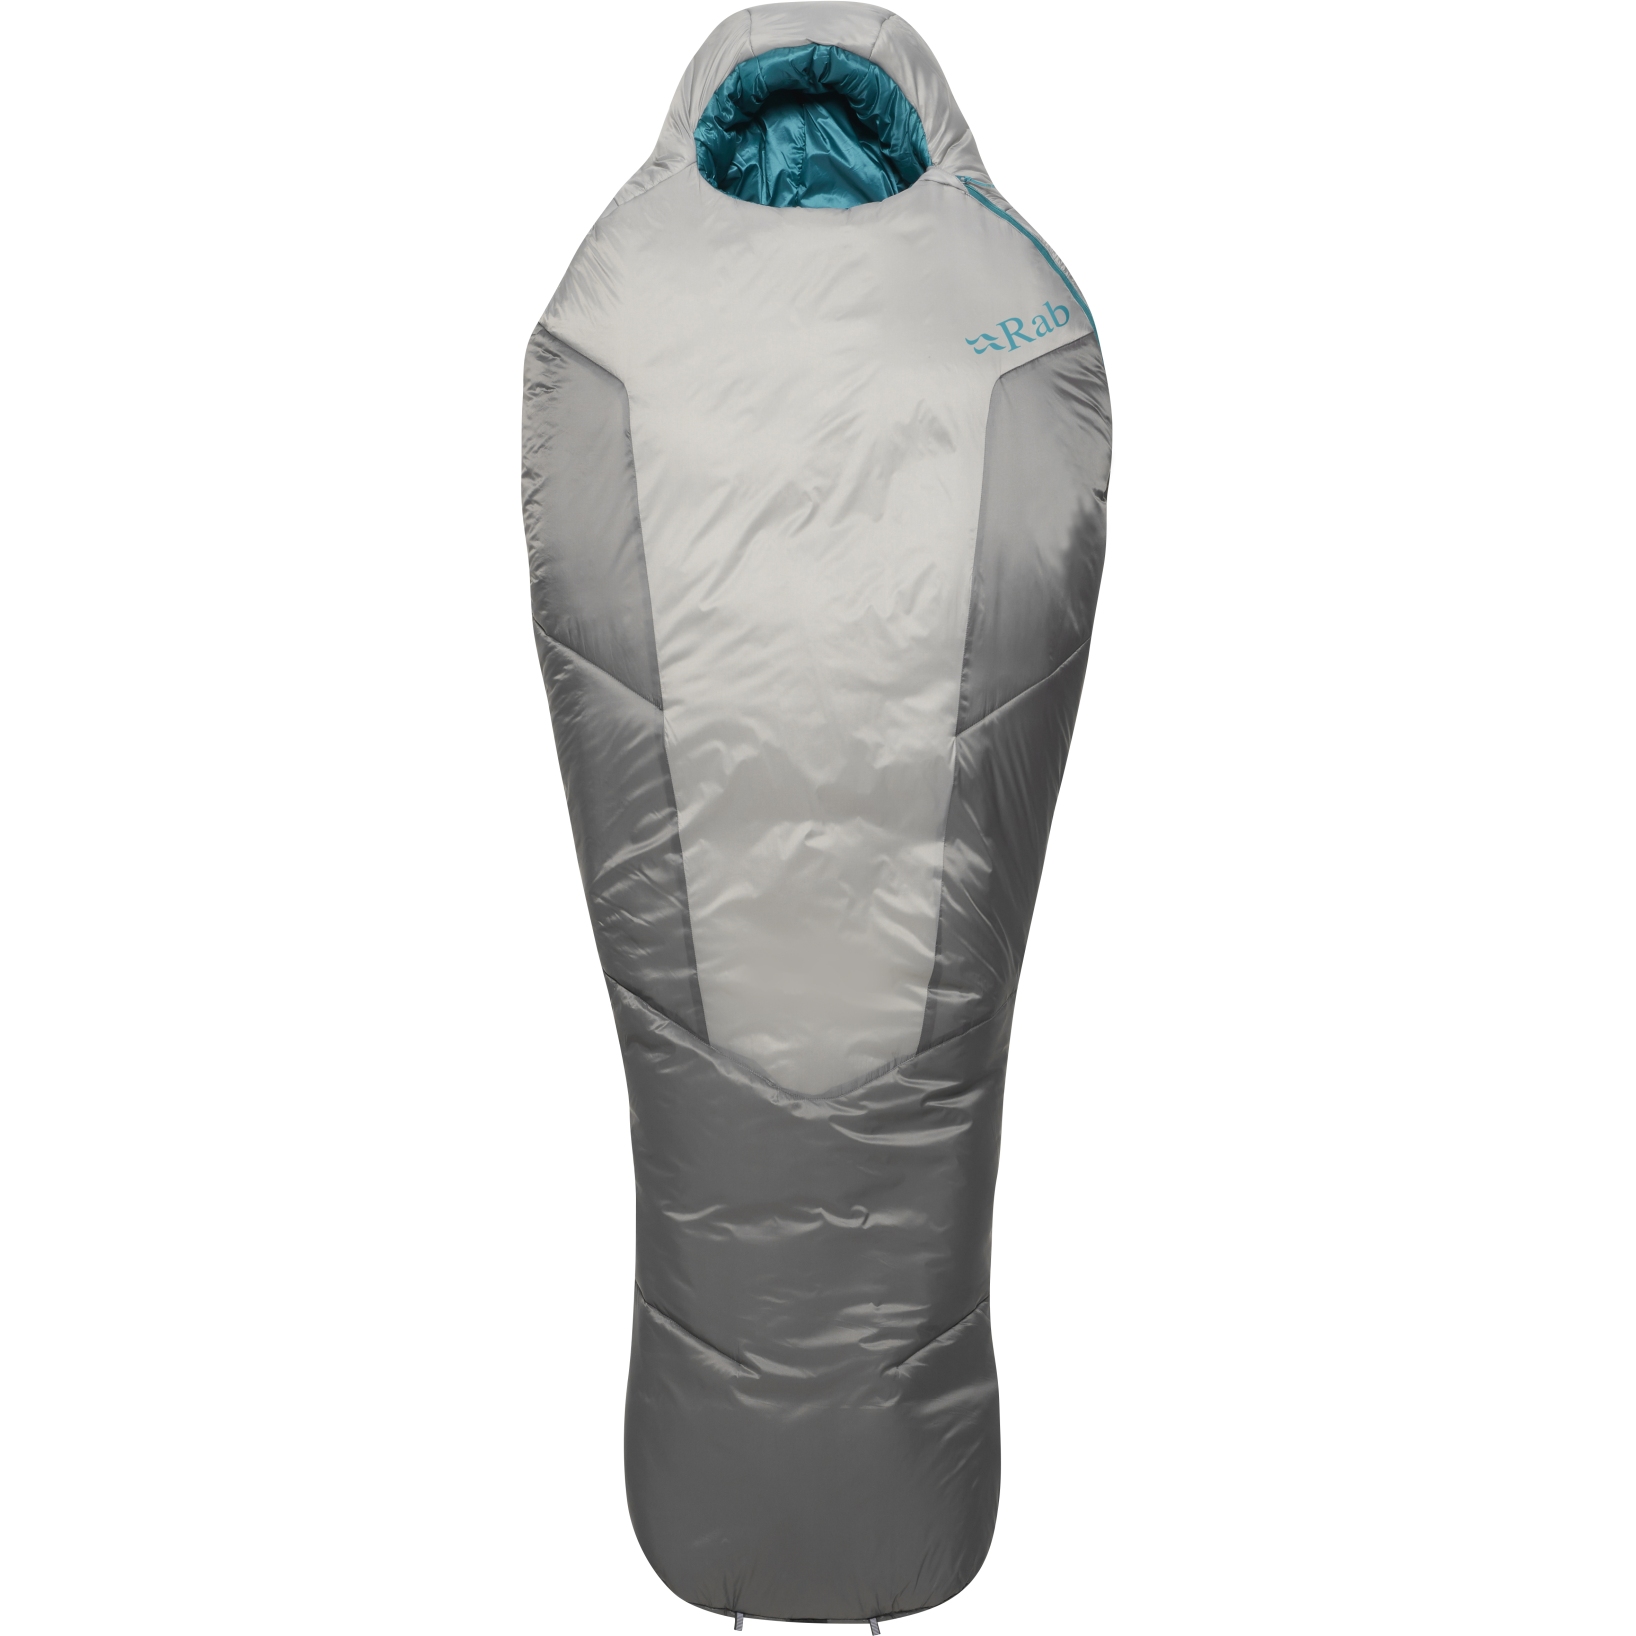 Produktbild von Rab Solar Ultra 3 Schlafsack Damen - RV links - dark pewter